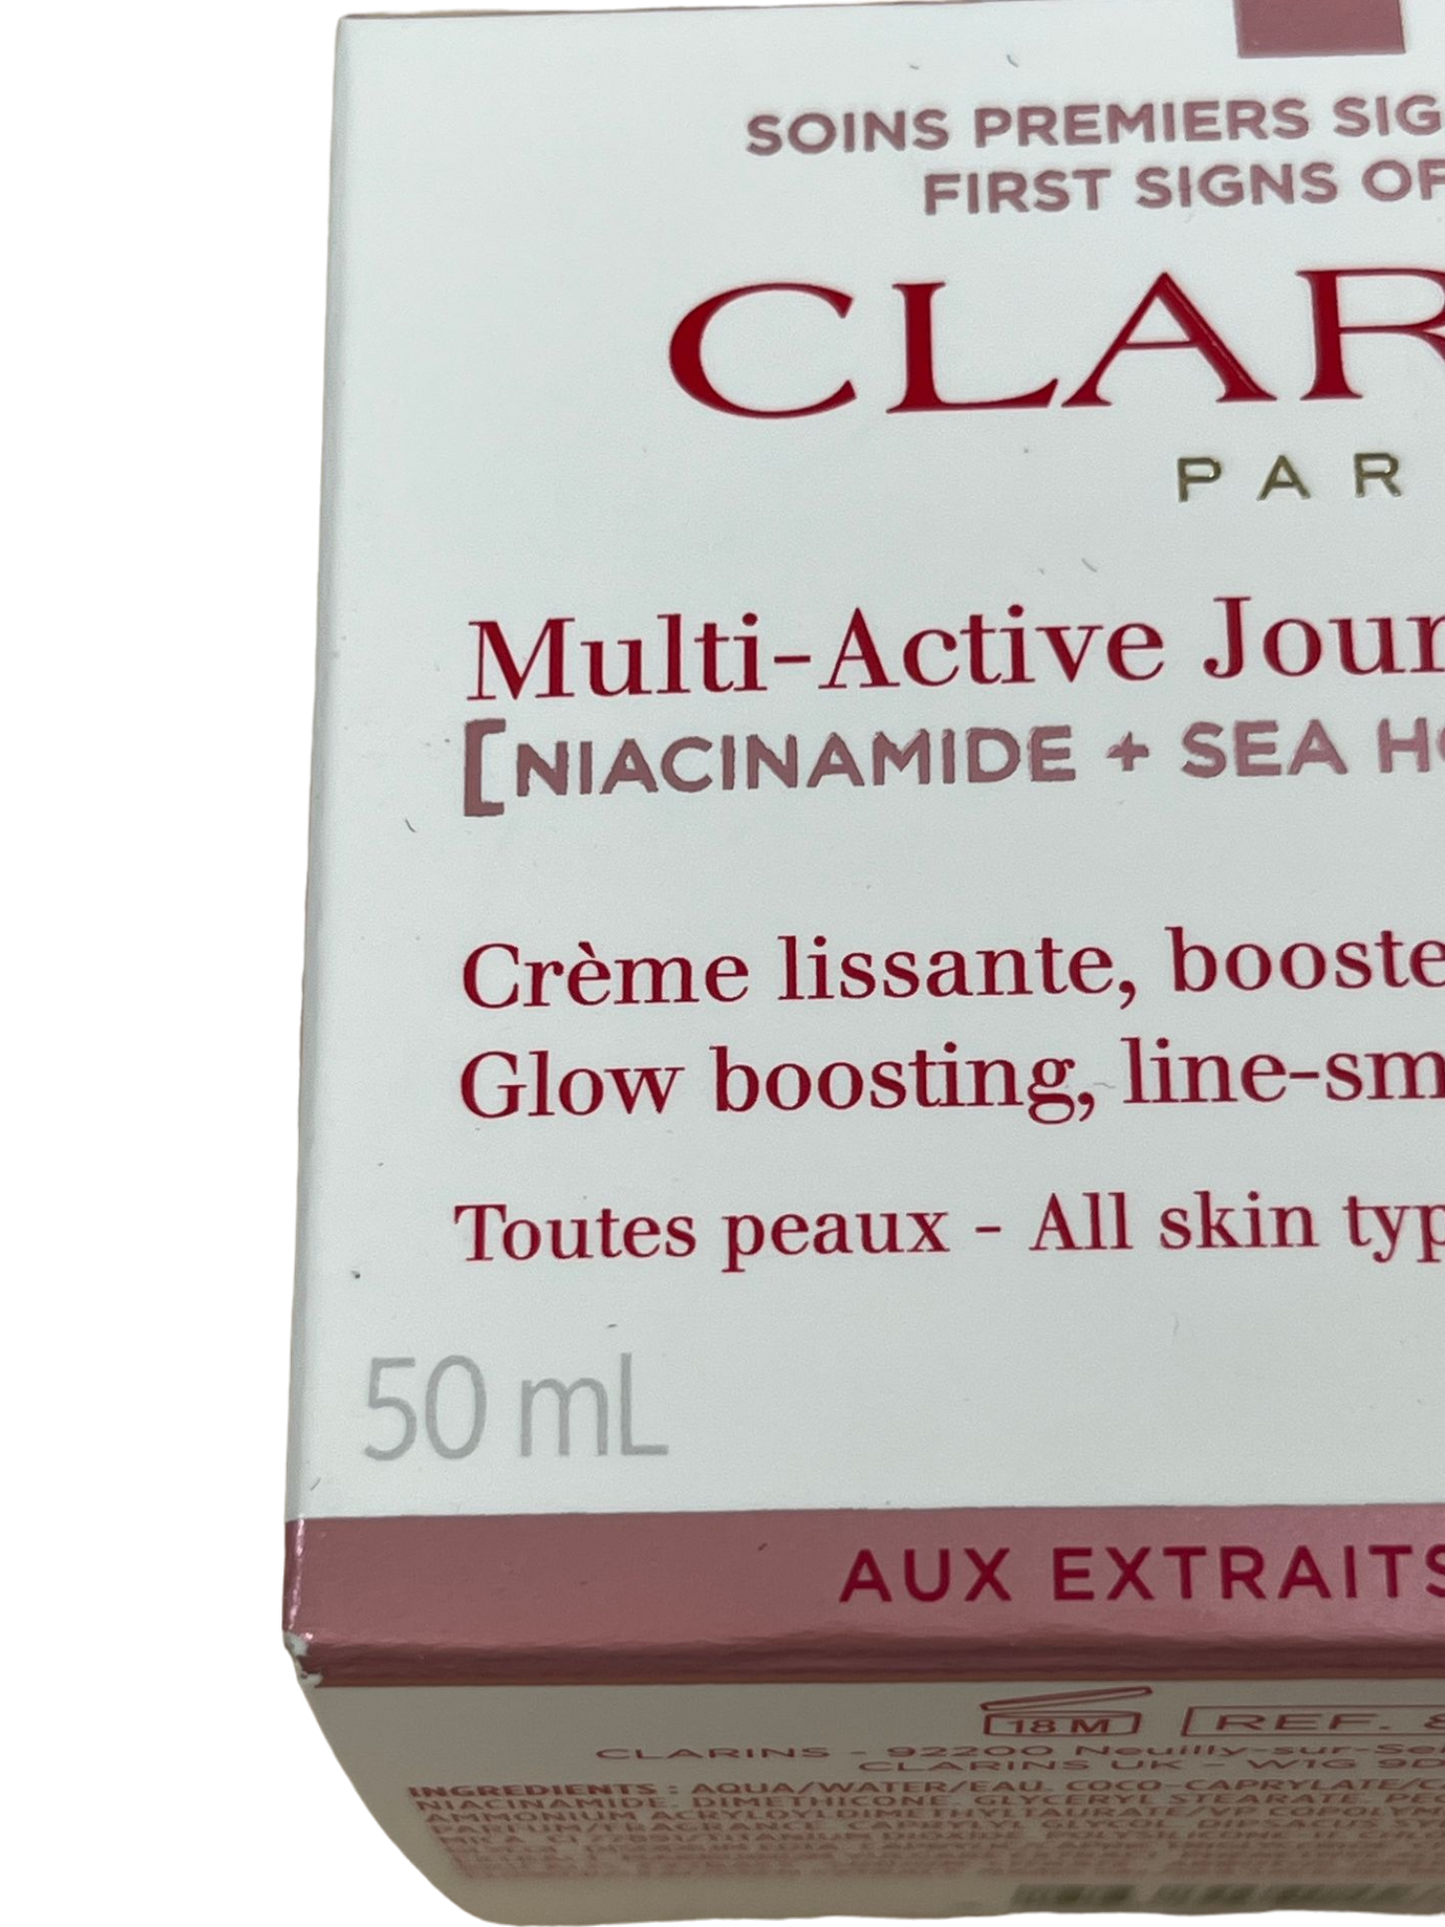 Clarins Multi-Active Jour Anti-Aging Day Cream 50ml